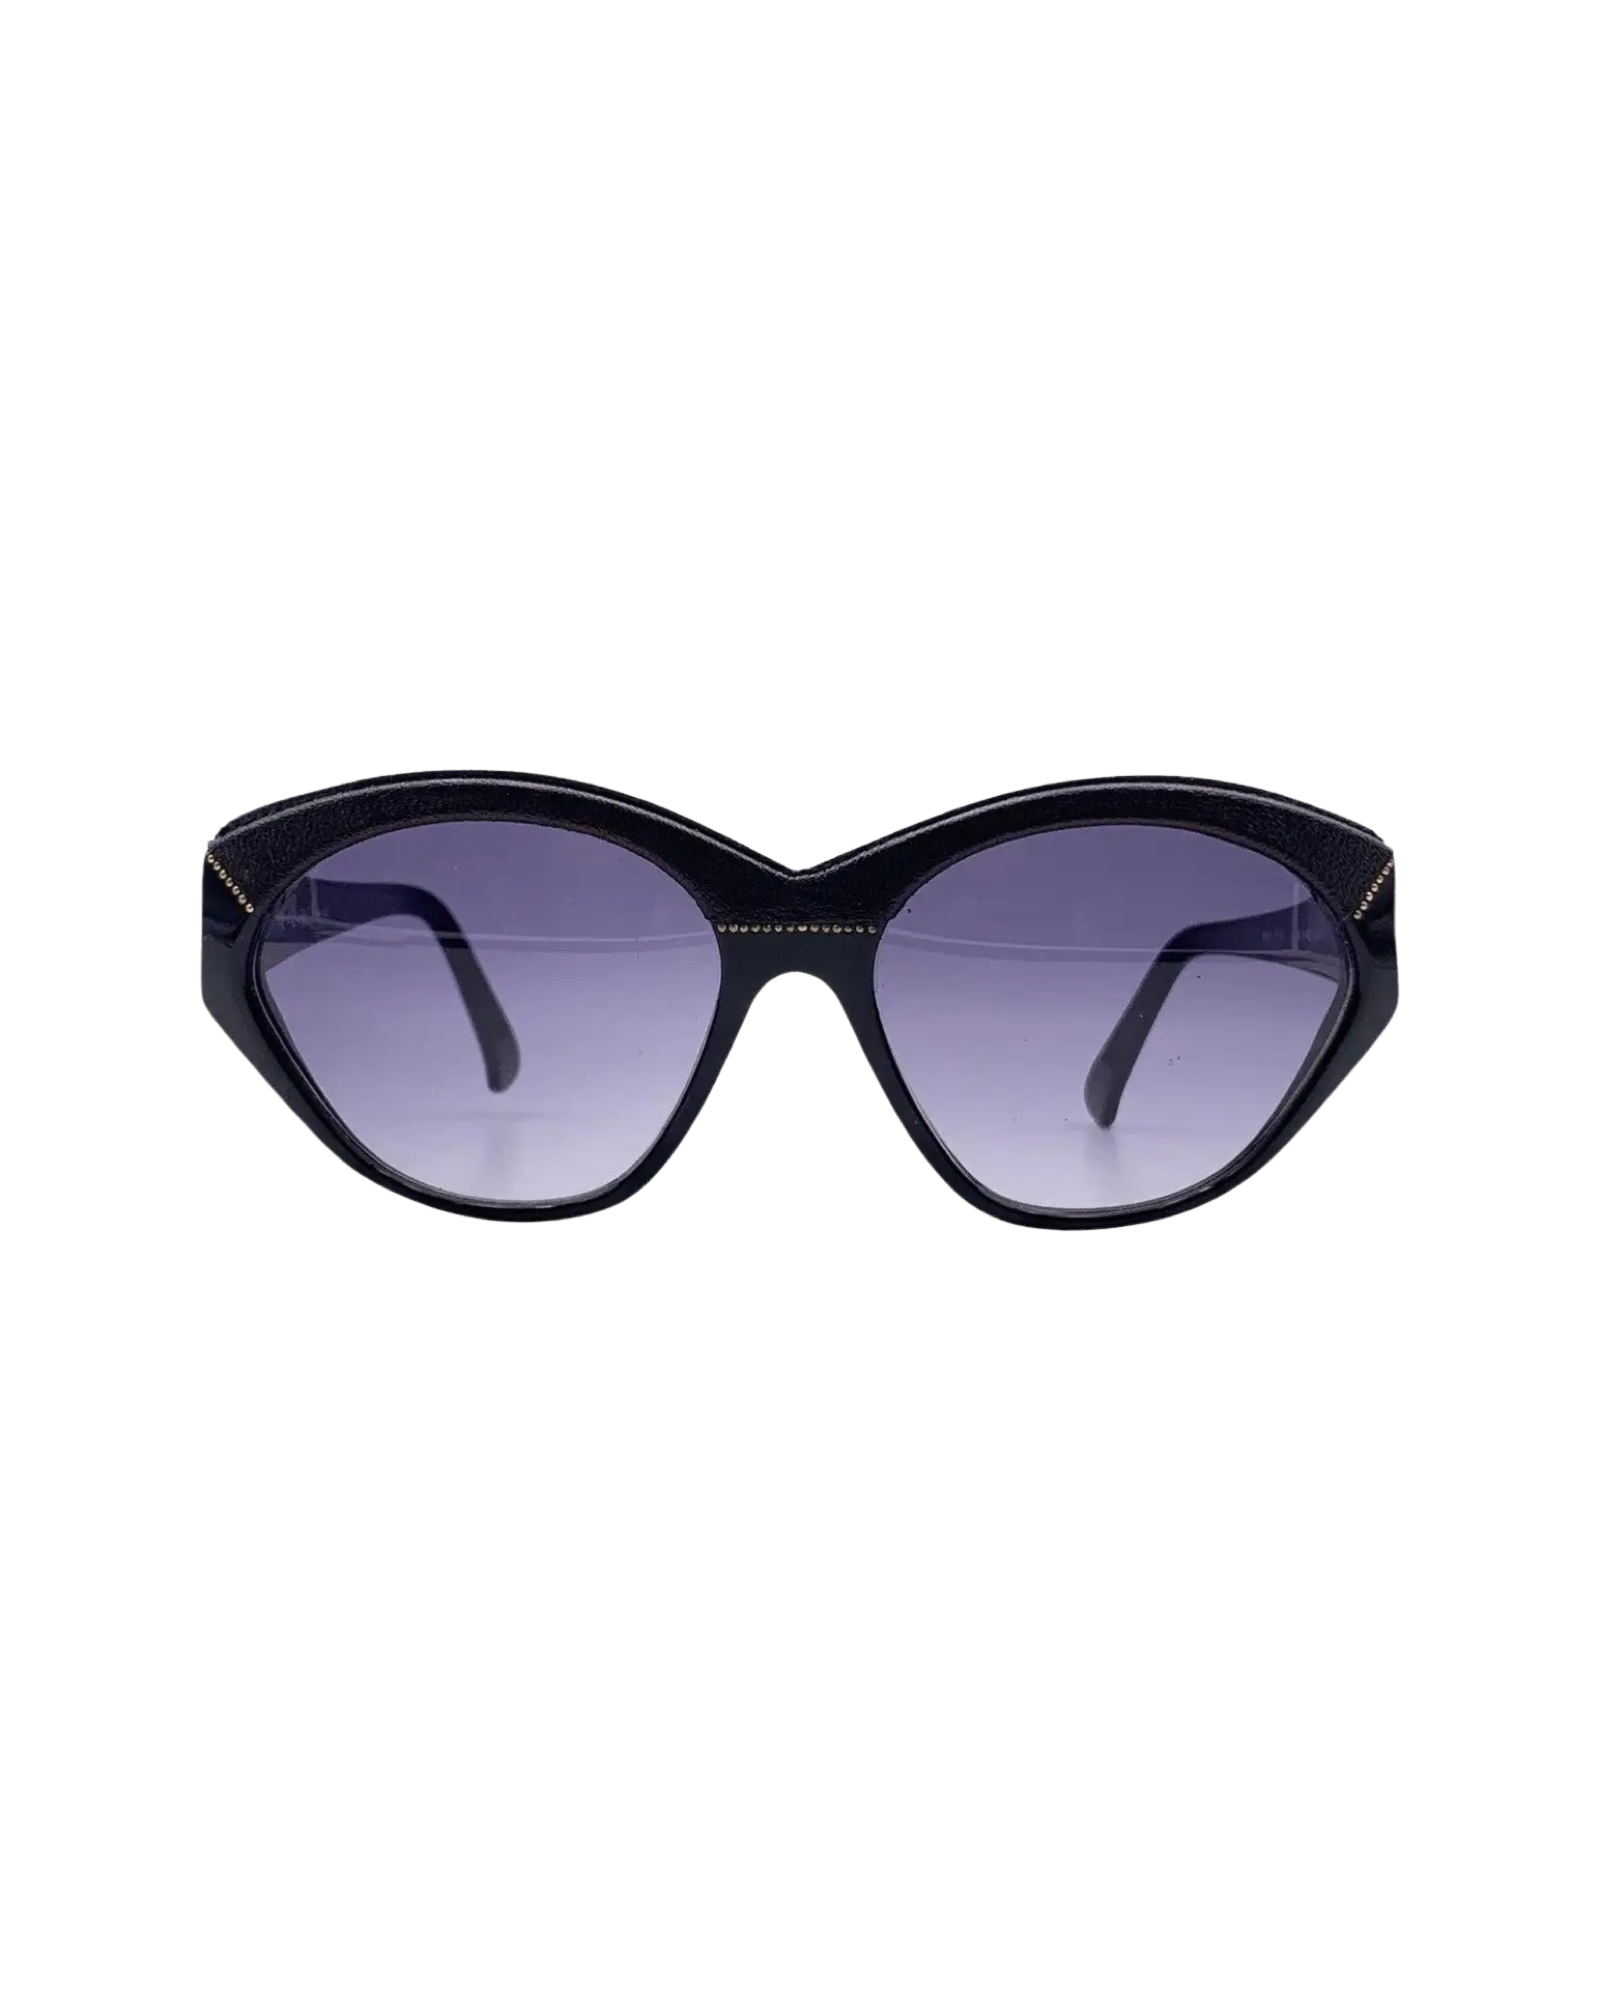 Yves Saint Laurent Vintage Sunglasses 8916 P367 58-12 135mm